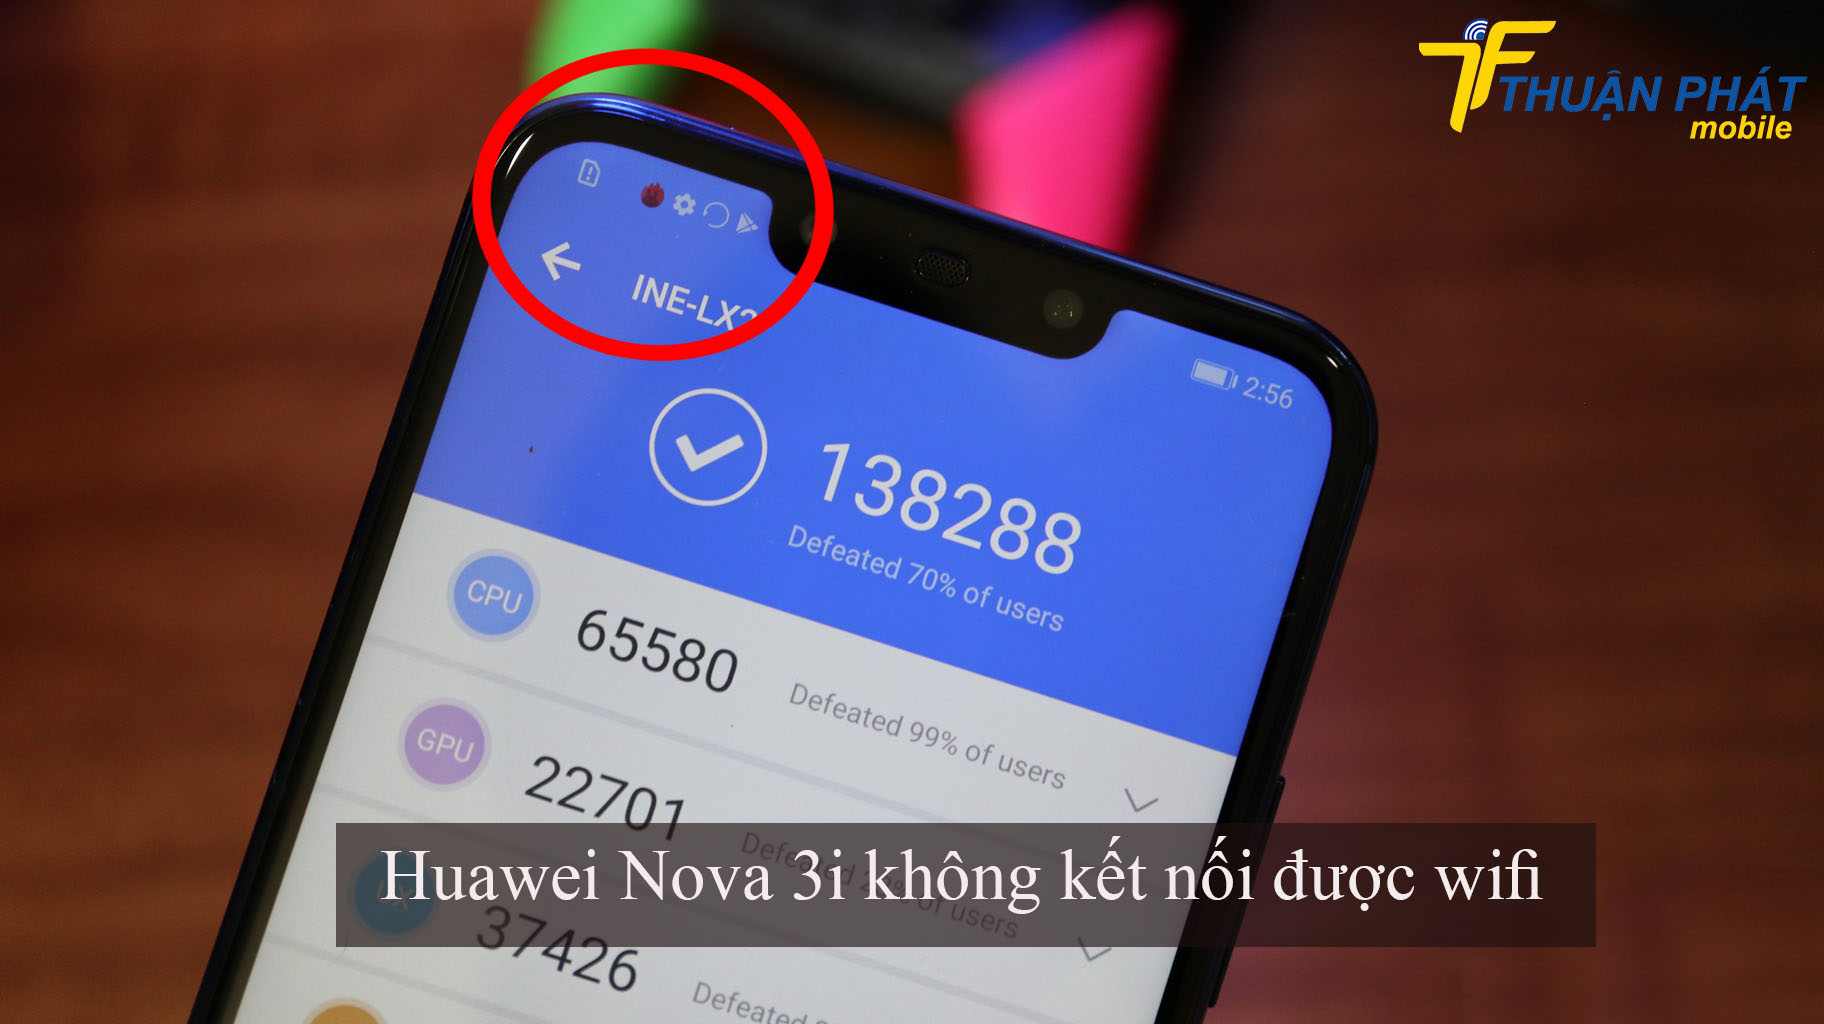 Huawei Nova 3i không kết nối được với wifi